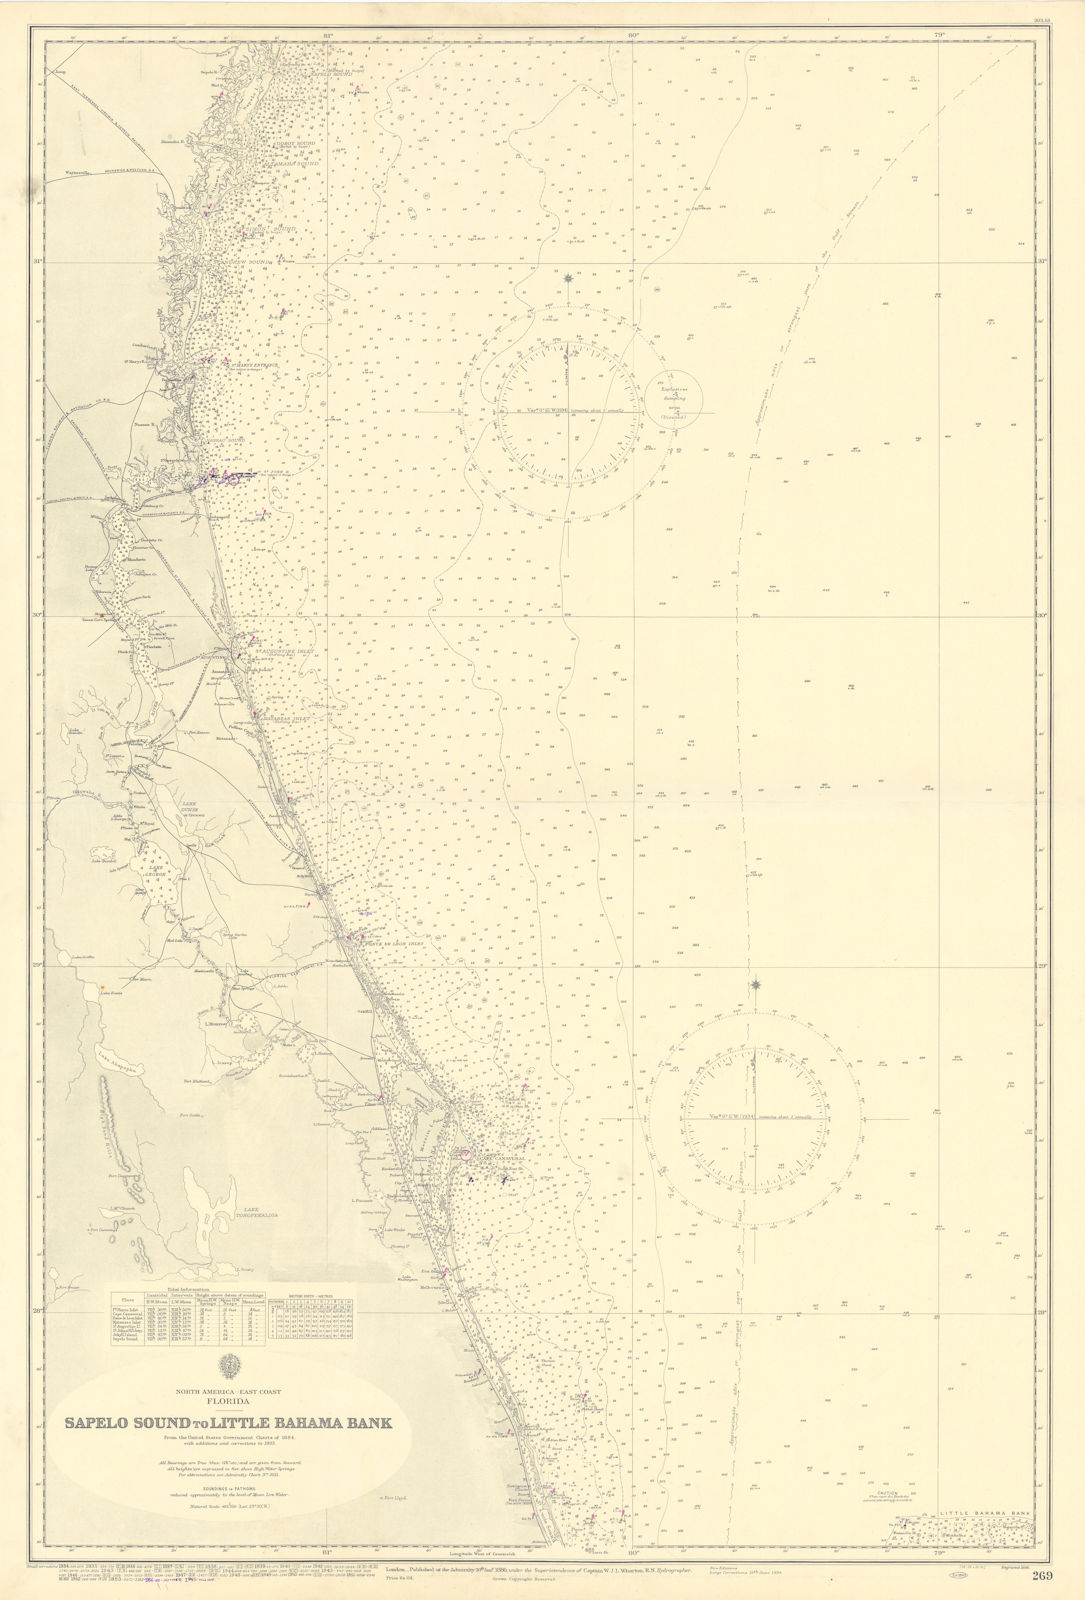 Florida Georgia coast Sapelo Island-St Lucie ADMIRALTY sea chart 1886 (1955) map